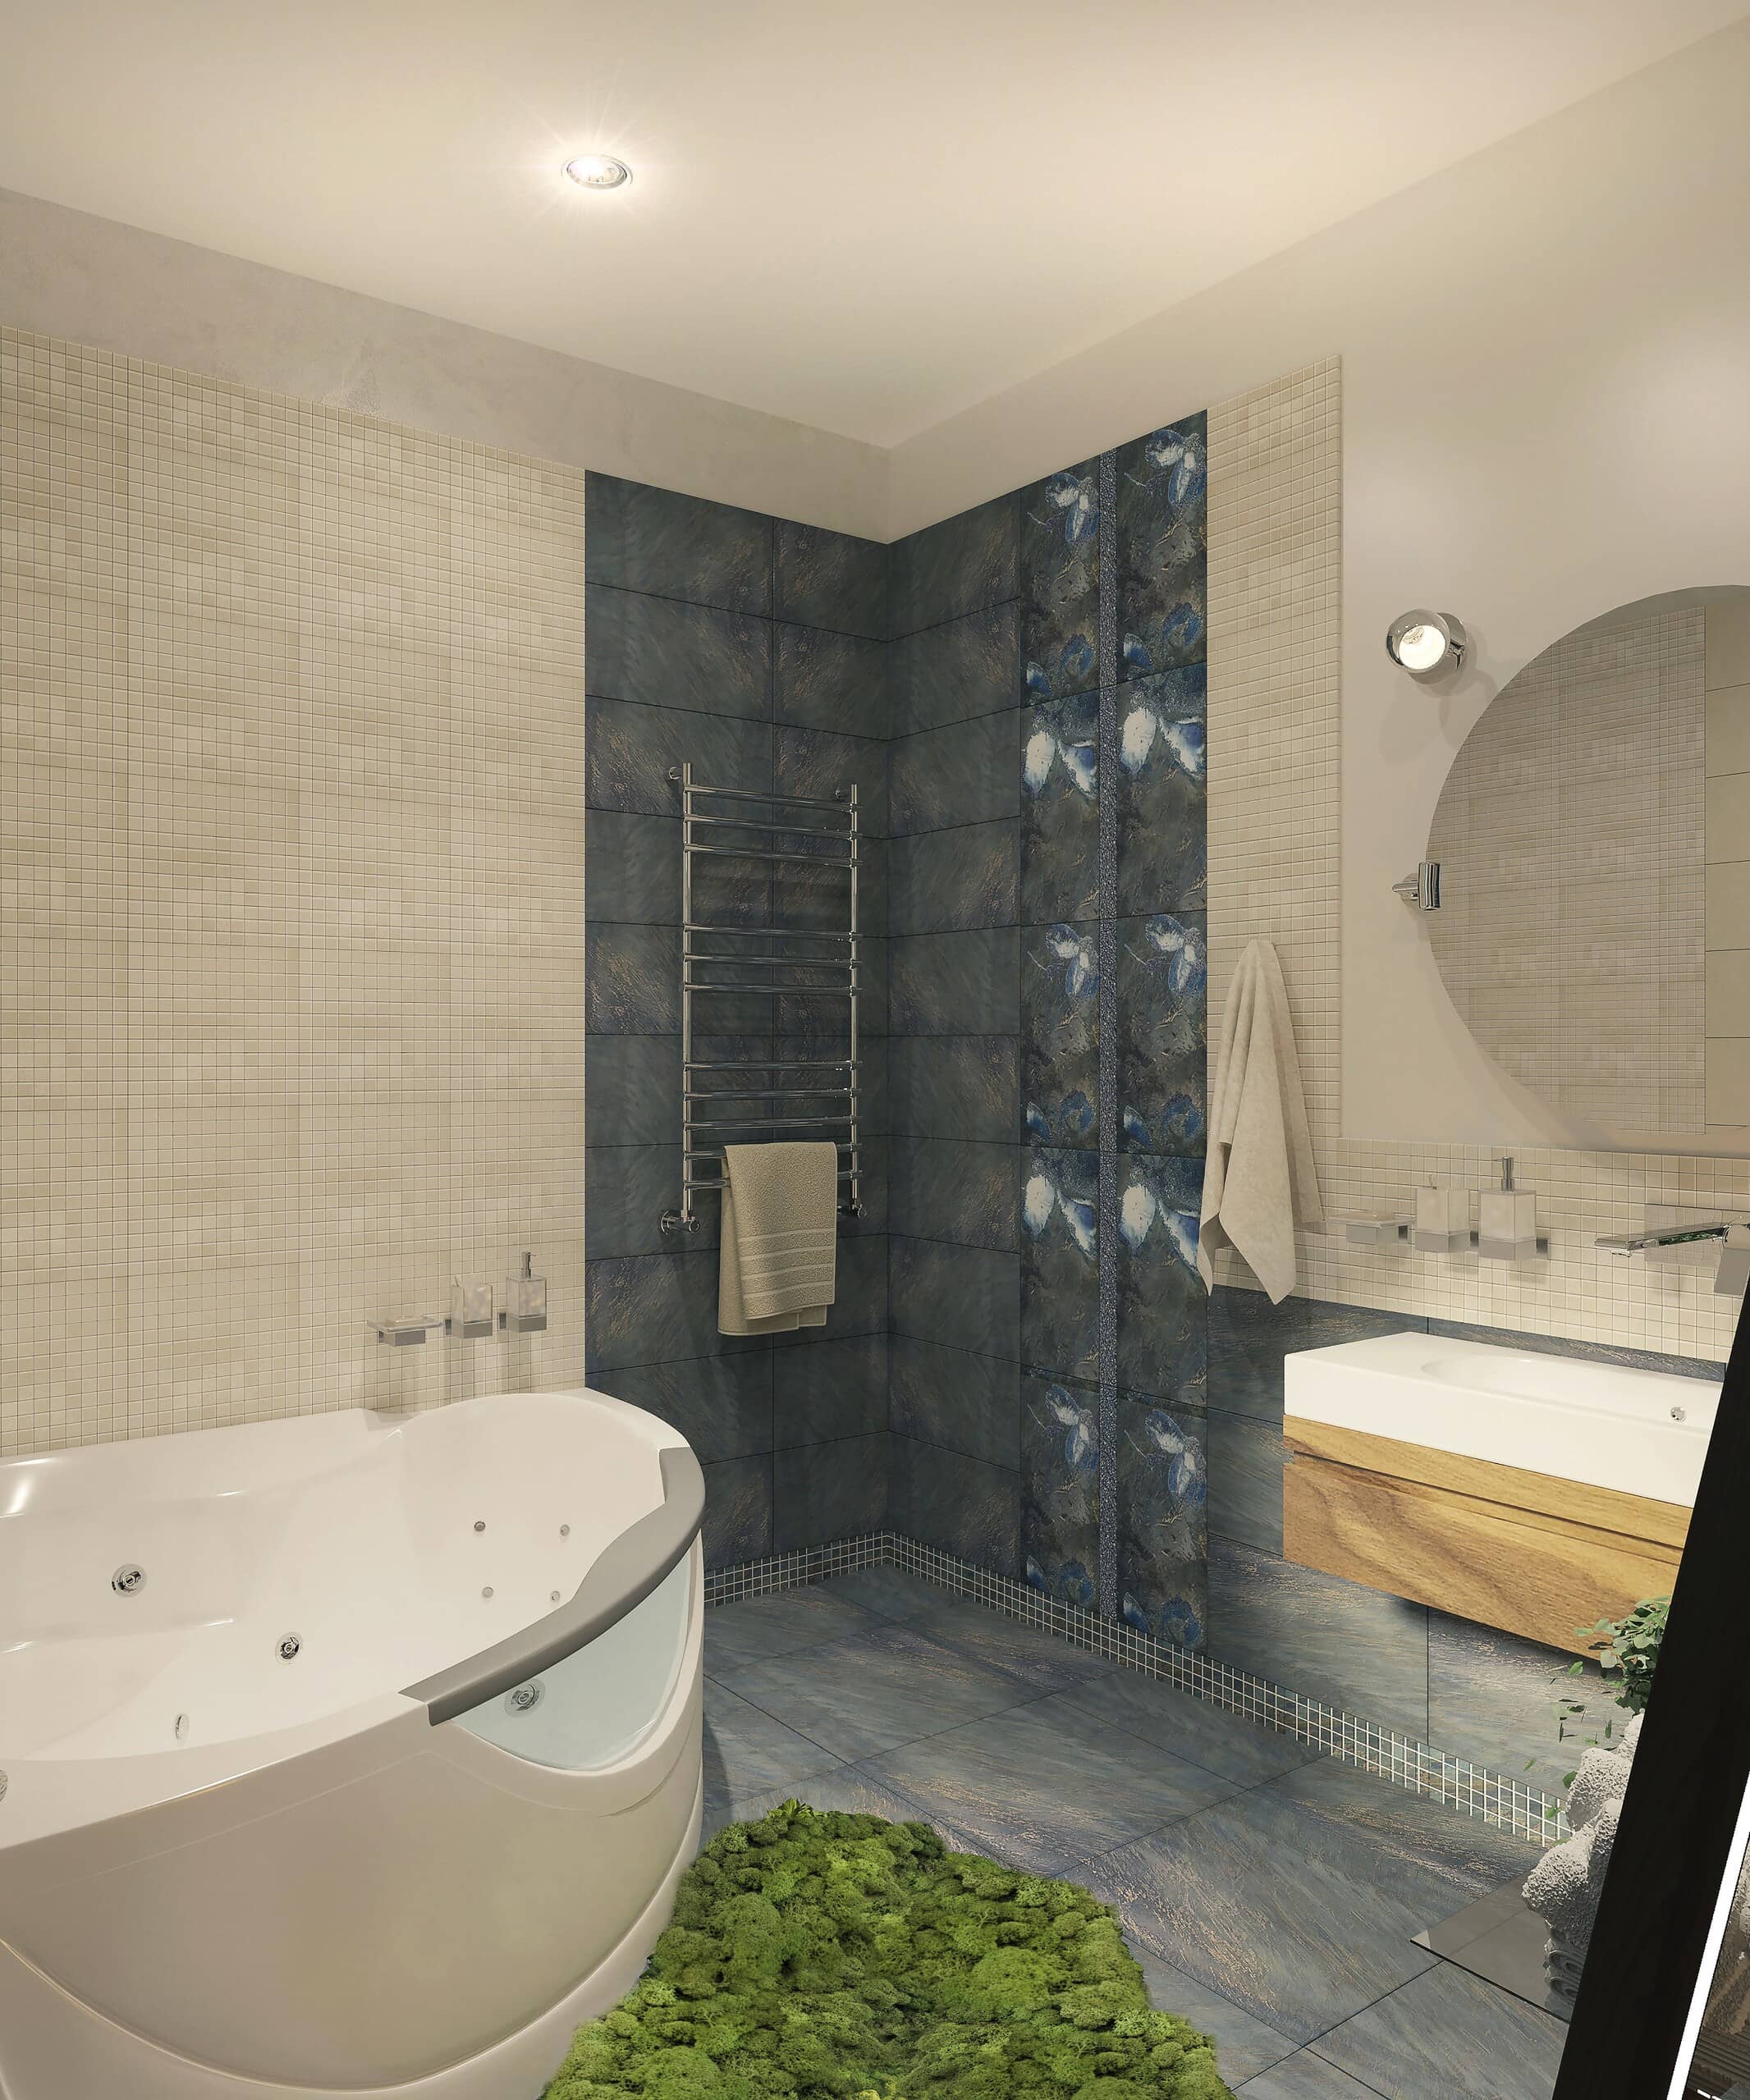 Плитка сине-серого оттенка отлично дополняет ванную комнату